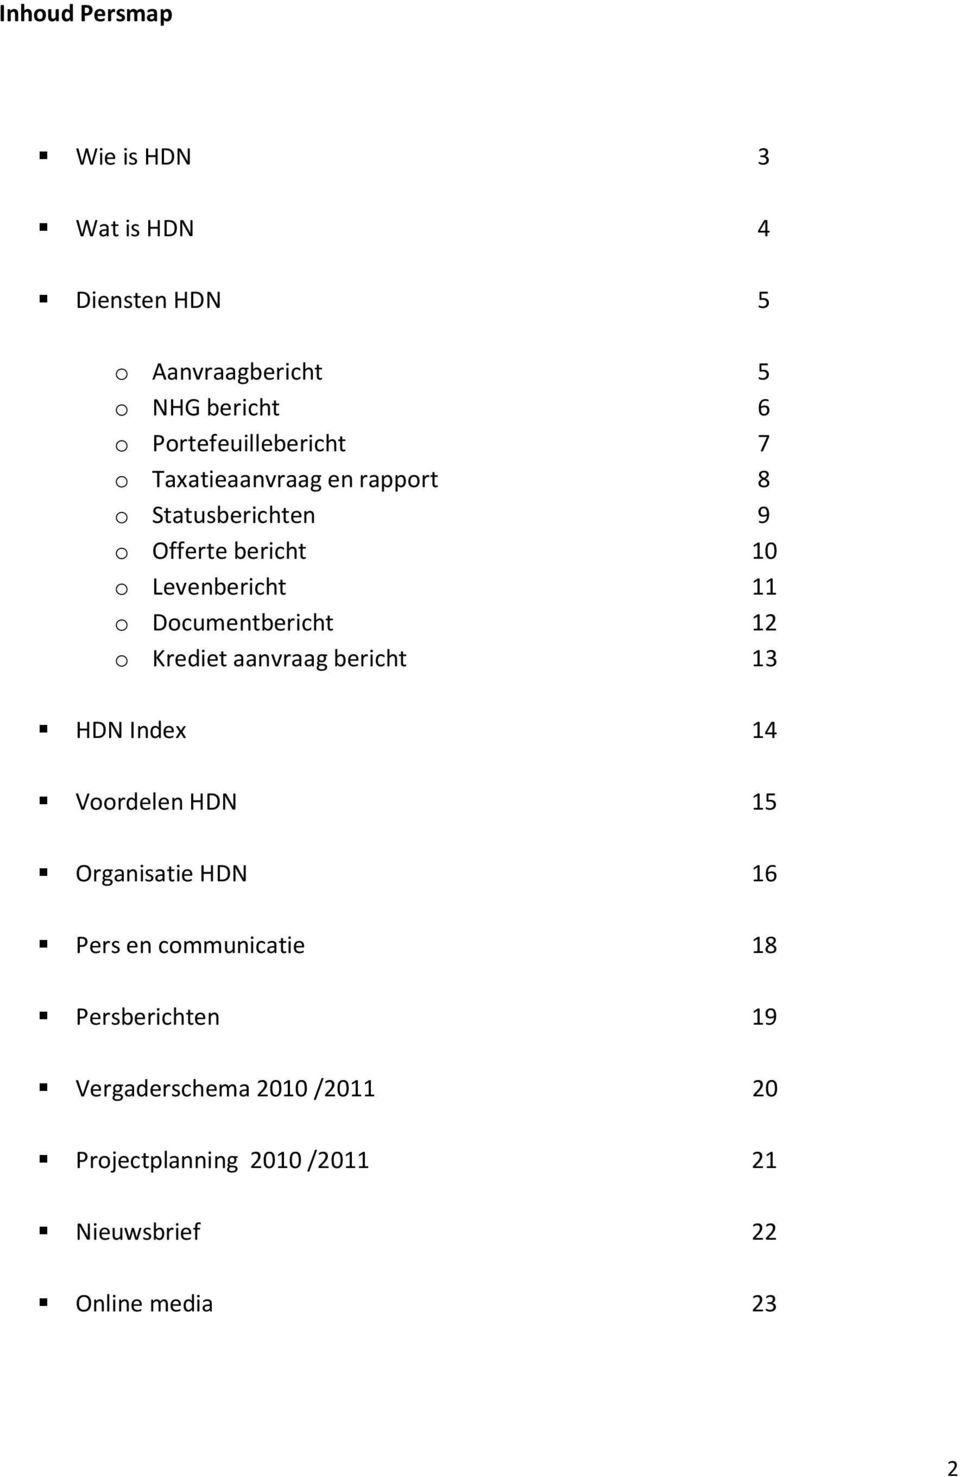 11 o Documentbericht 12 o Krediet aanvraag bericht 13 HDN Index 14 Voordelen HDN 15 Organisatie HDN 16 Pers